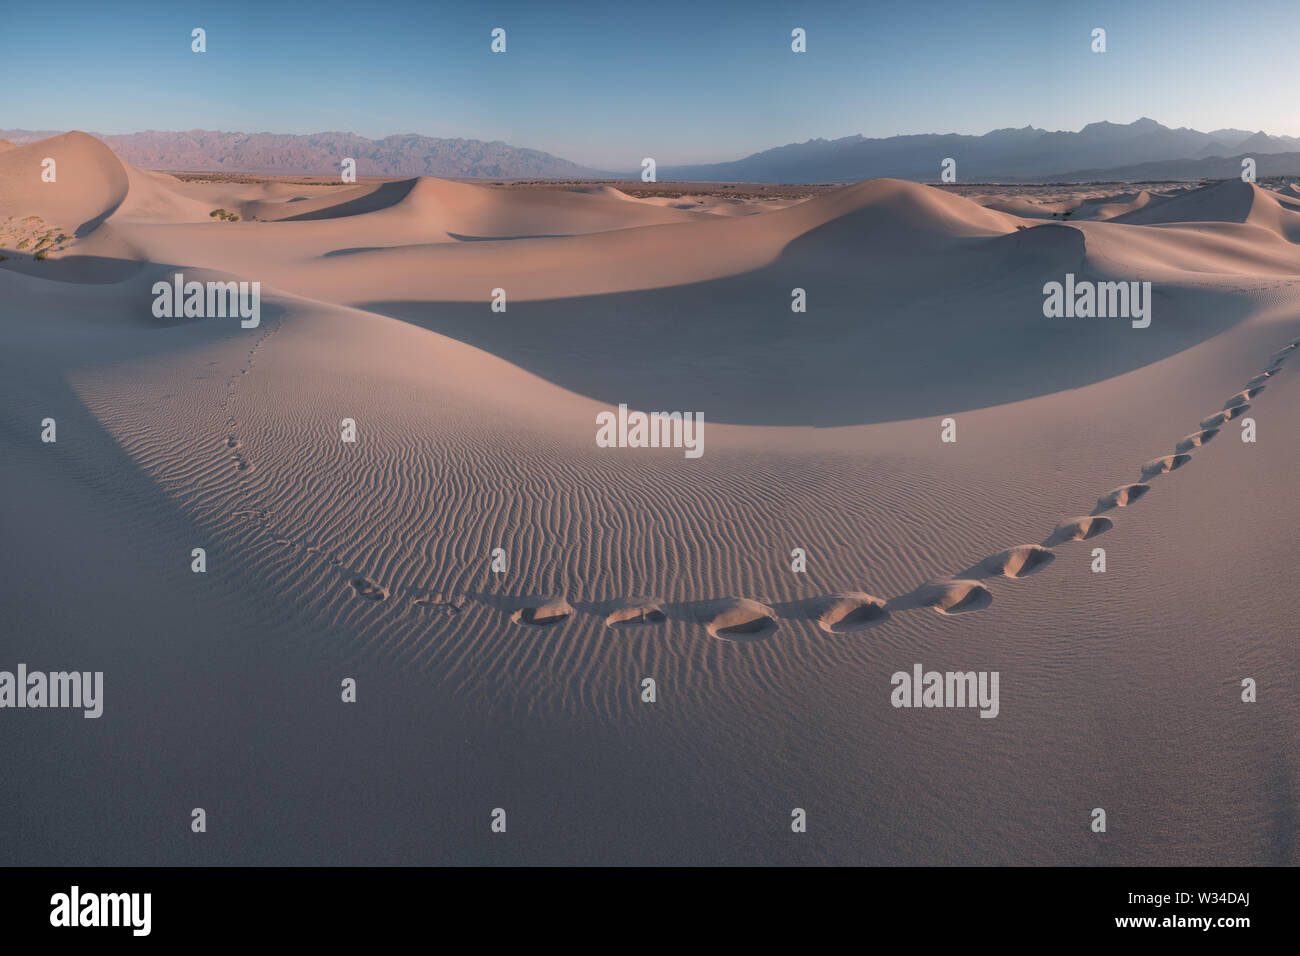 La primera luz del día a lo largo de dunas de arena y montañas en Mesquite flat dunes, Parque Nacional Valle de la Muerte, California, EE.UU Stovepipe Wells dunas de arena Foto de stock